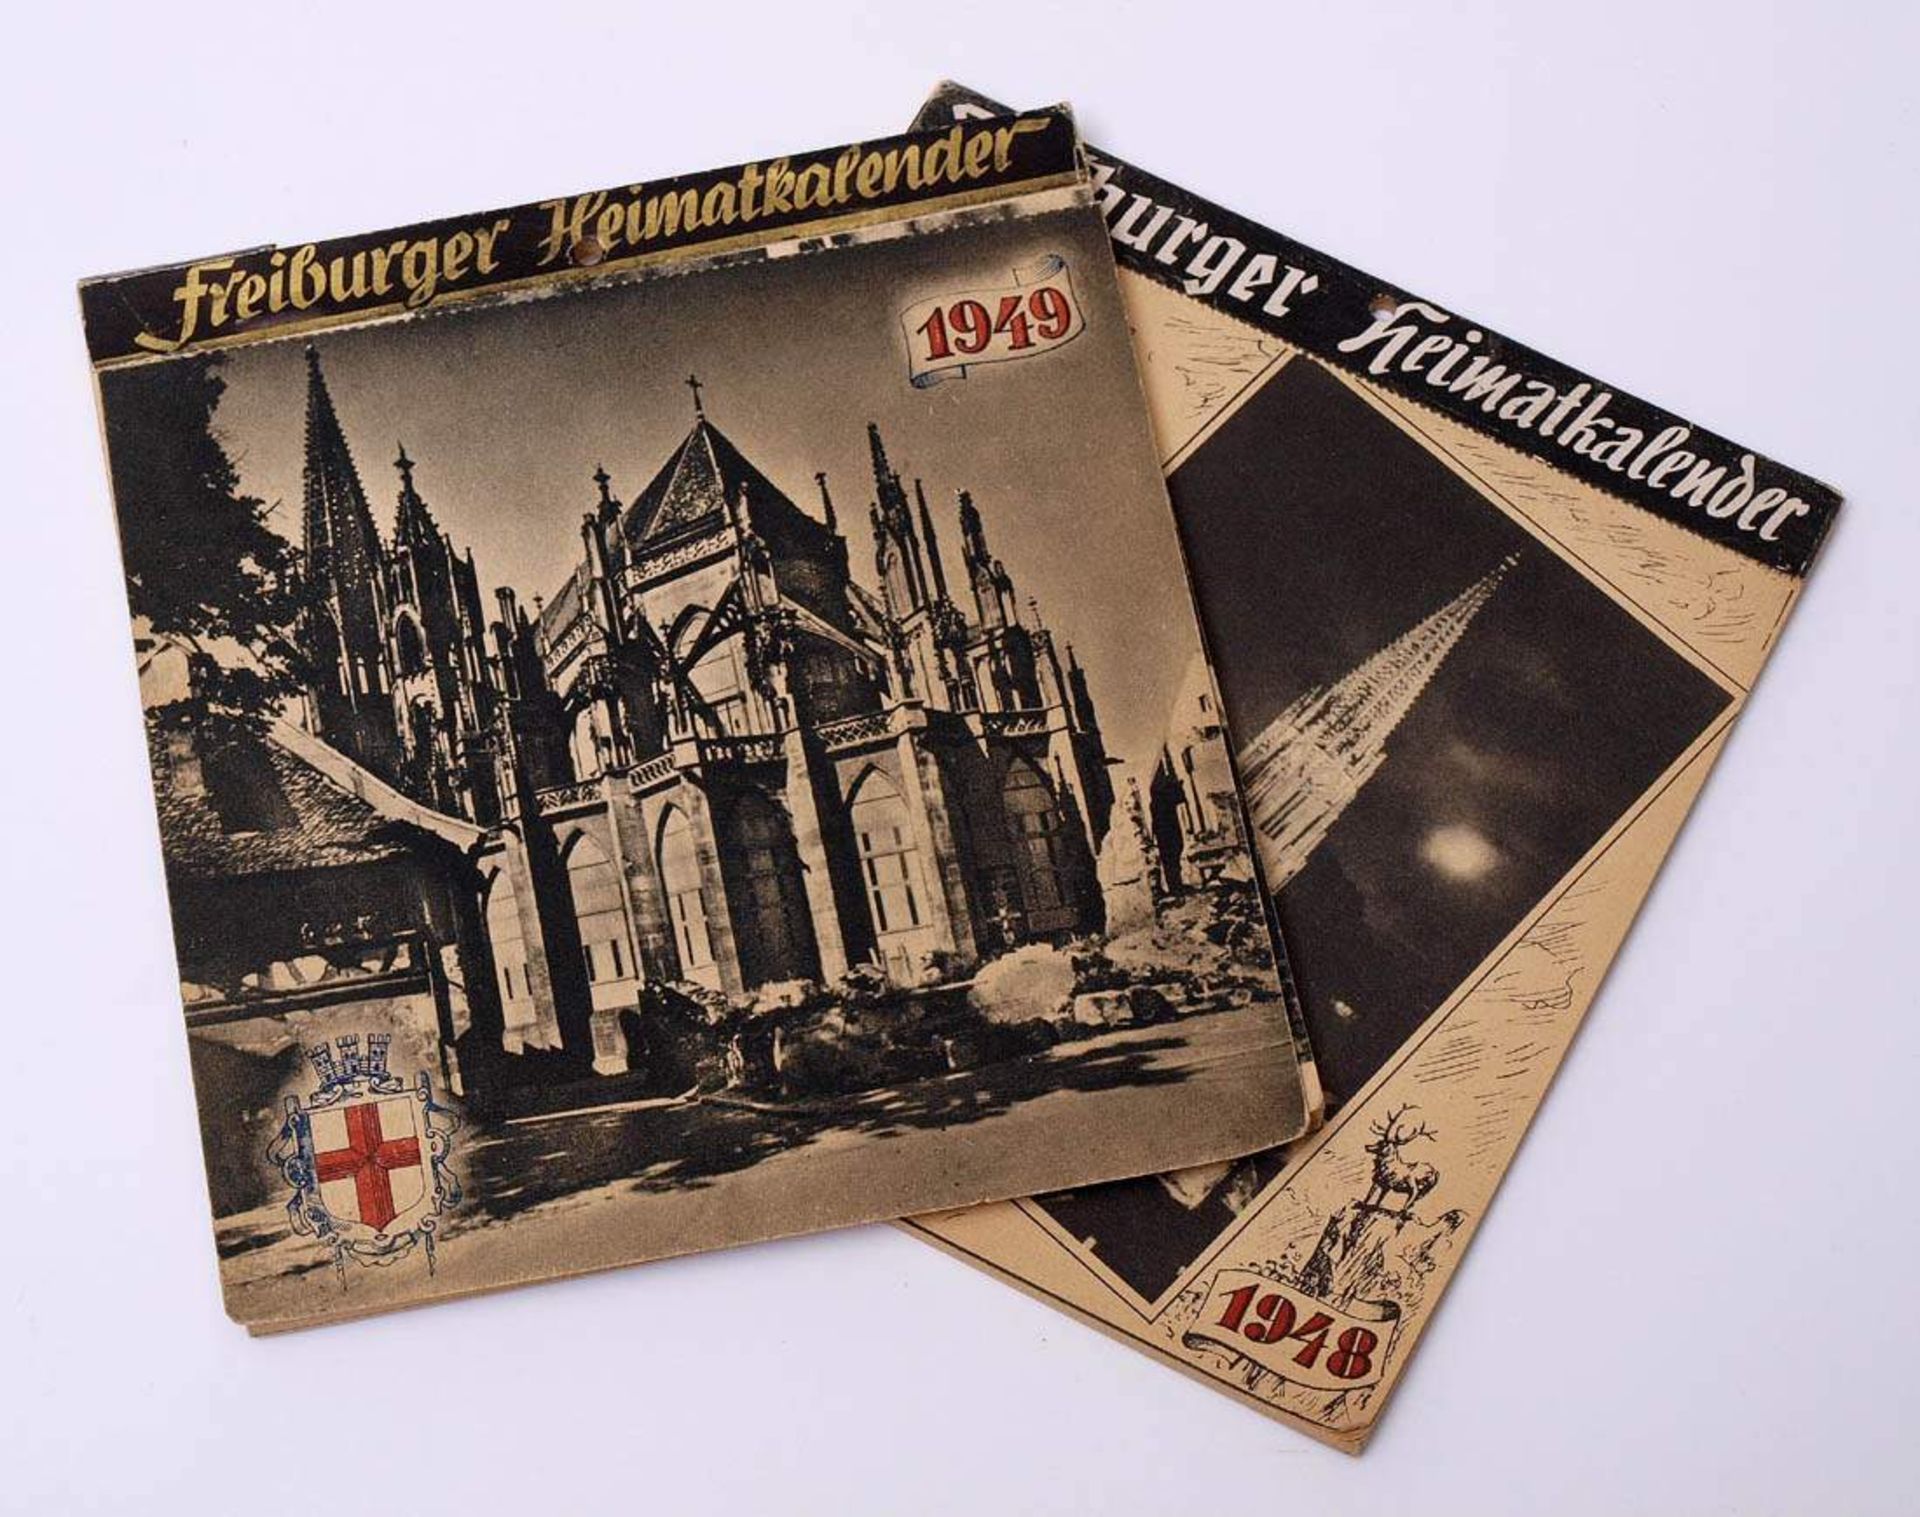 Zwei Freiburger Heimatkalender, Jahrgang 1948 und 1949Als Postkarten gearbeitet. Interessantes